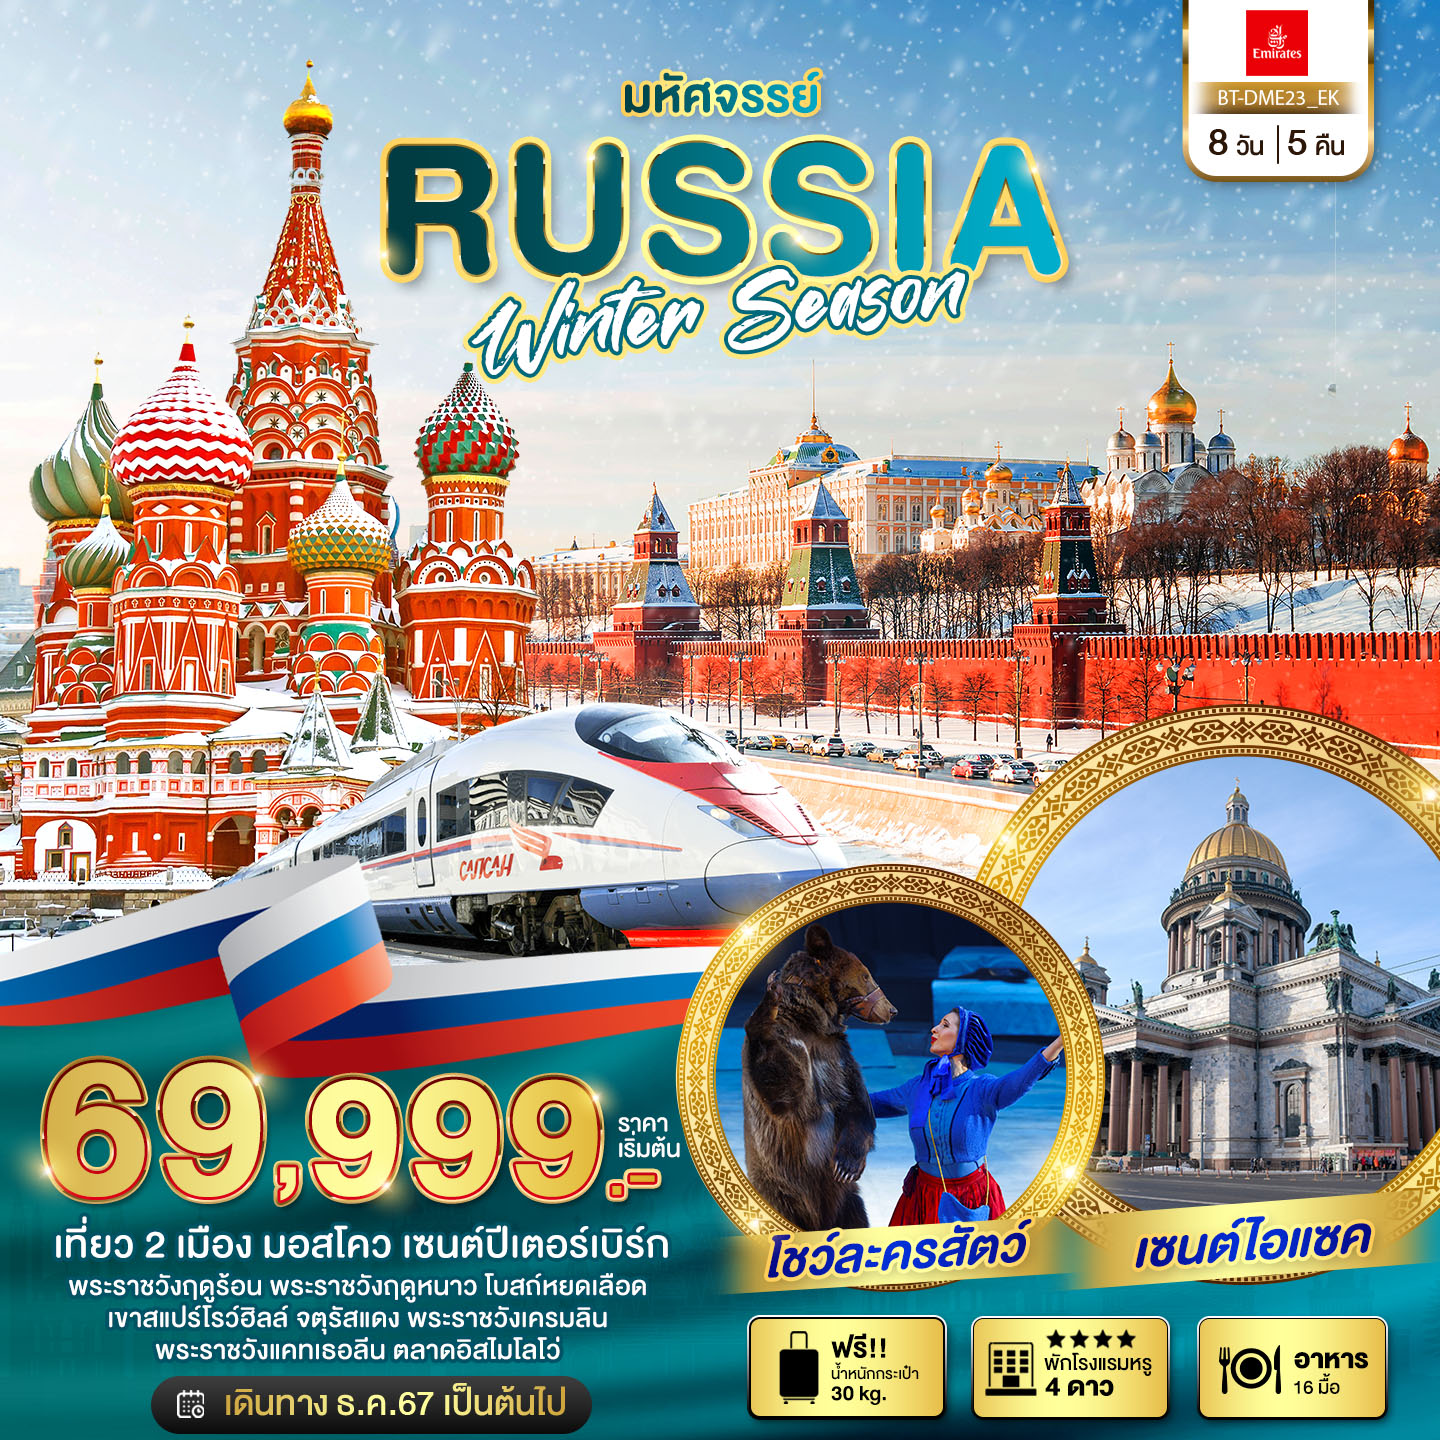 ทัวร์รัสเซีย มอสโคว เซนต์ปีเตอร์เบิร์ก WINTER SEASON 8 วัน 5 คืน